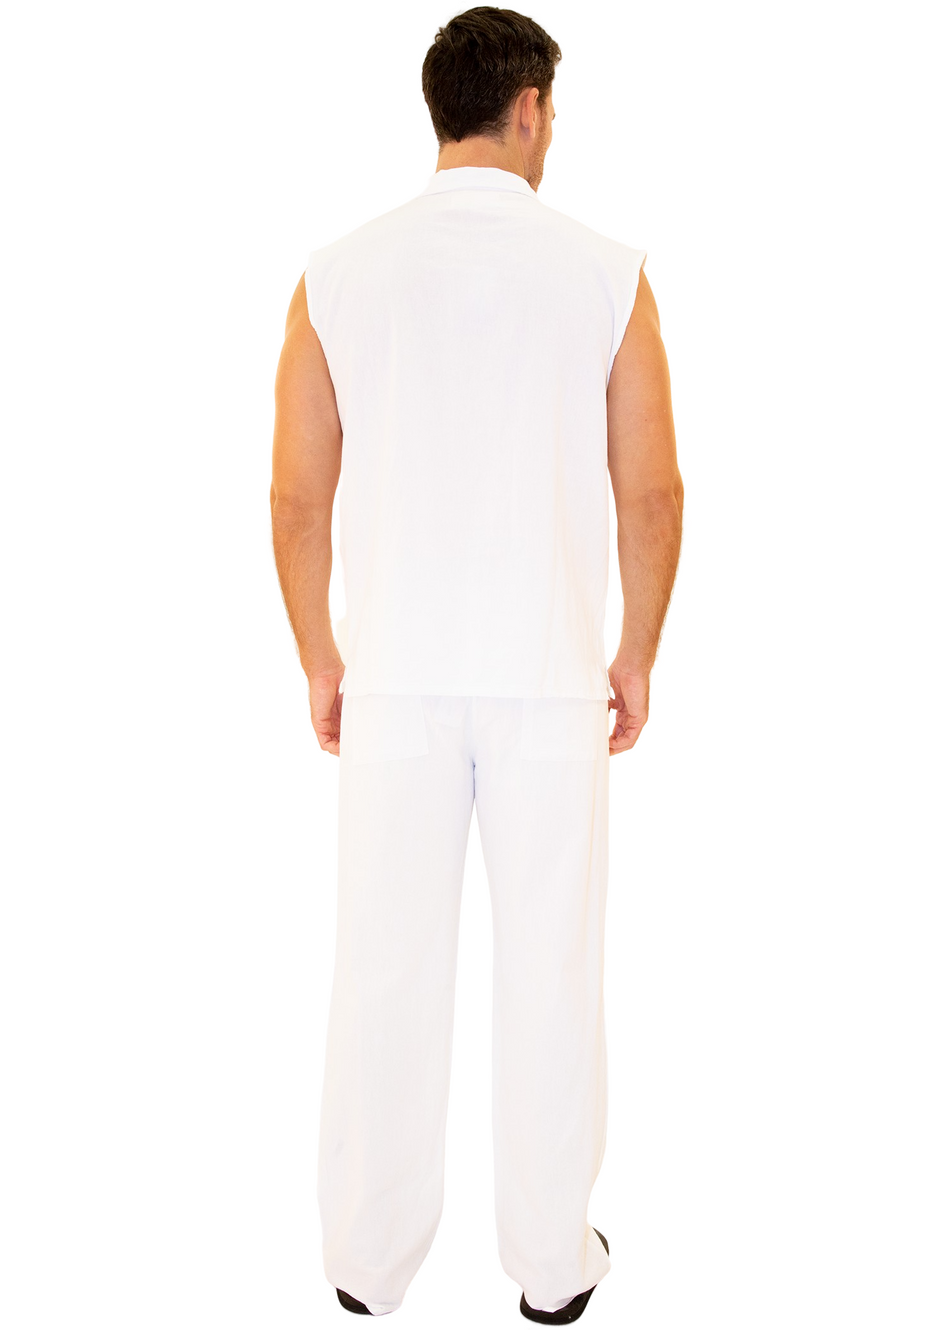 GZ1010 - White Cotton Drawstring Waist Pants